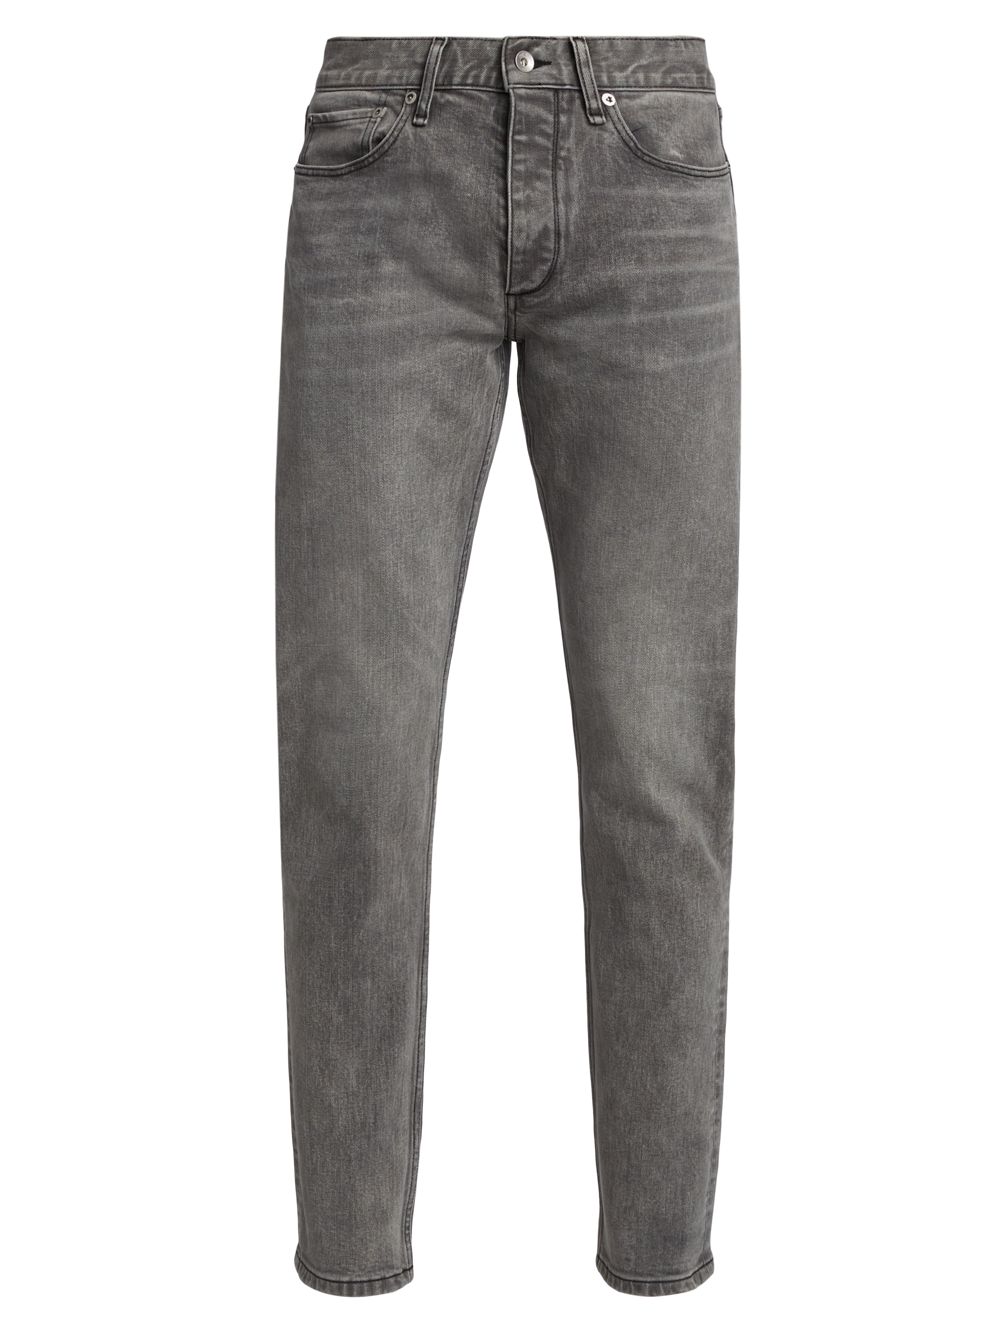 Узкие джинсы Greyson rag & bone, серый